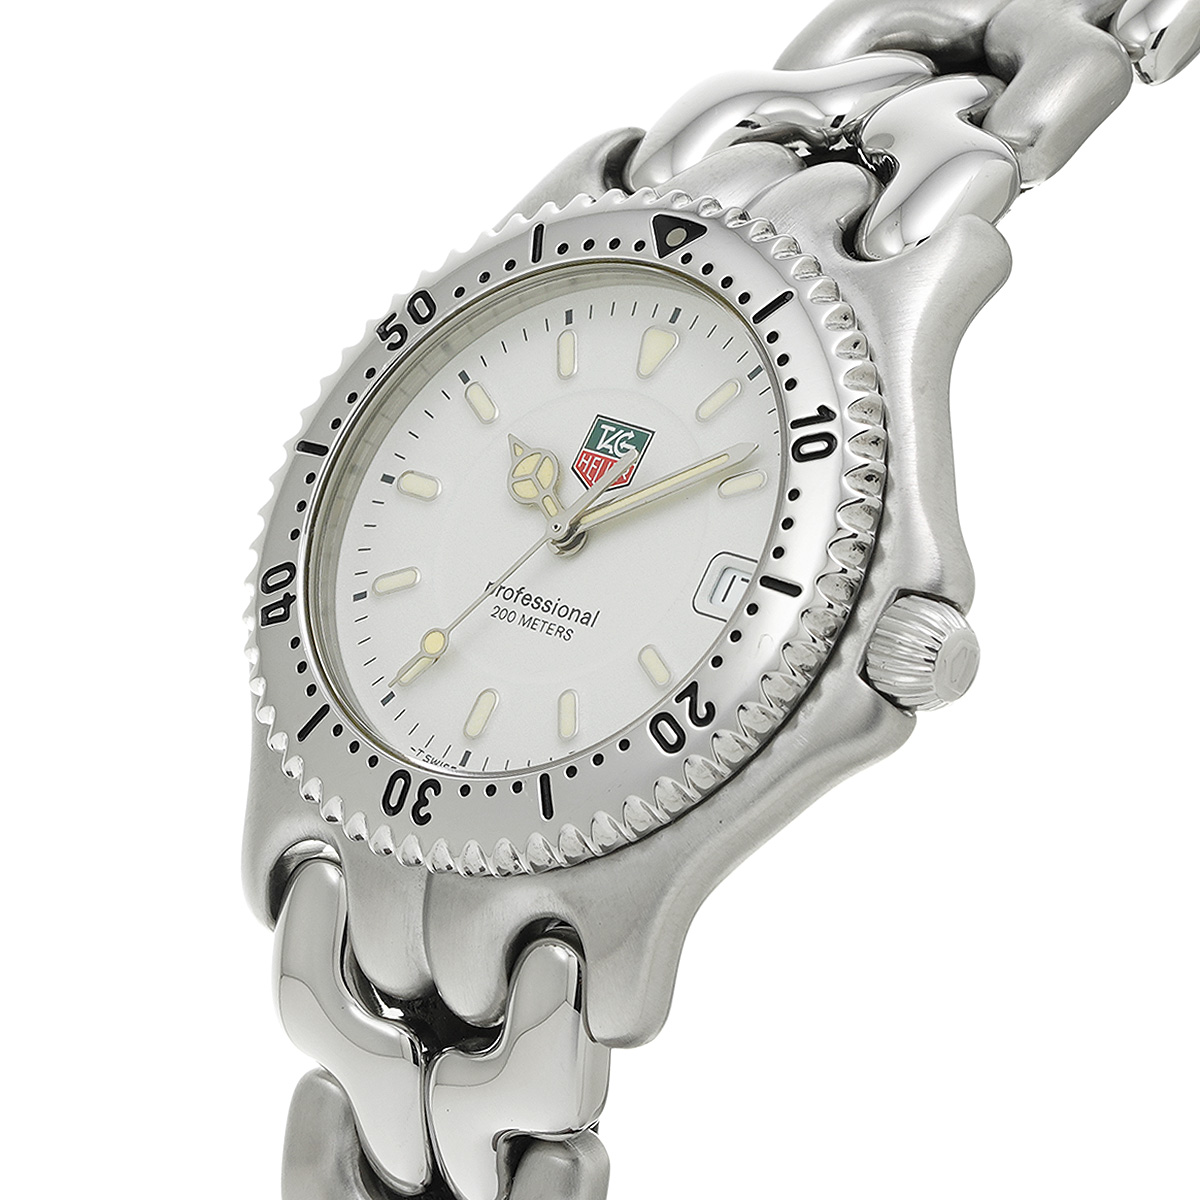 タグ ホイヤー / TAG HEUER セルシリーズ プロッフェッショナル 200 WG1112-0 ホワイト メンズ 時計  【中古】【wristwatch】